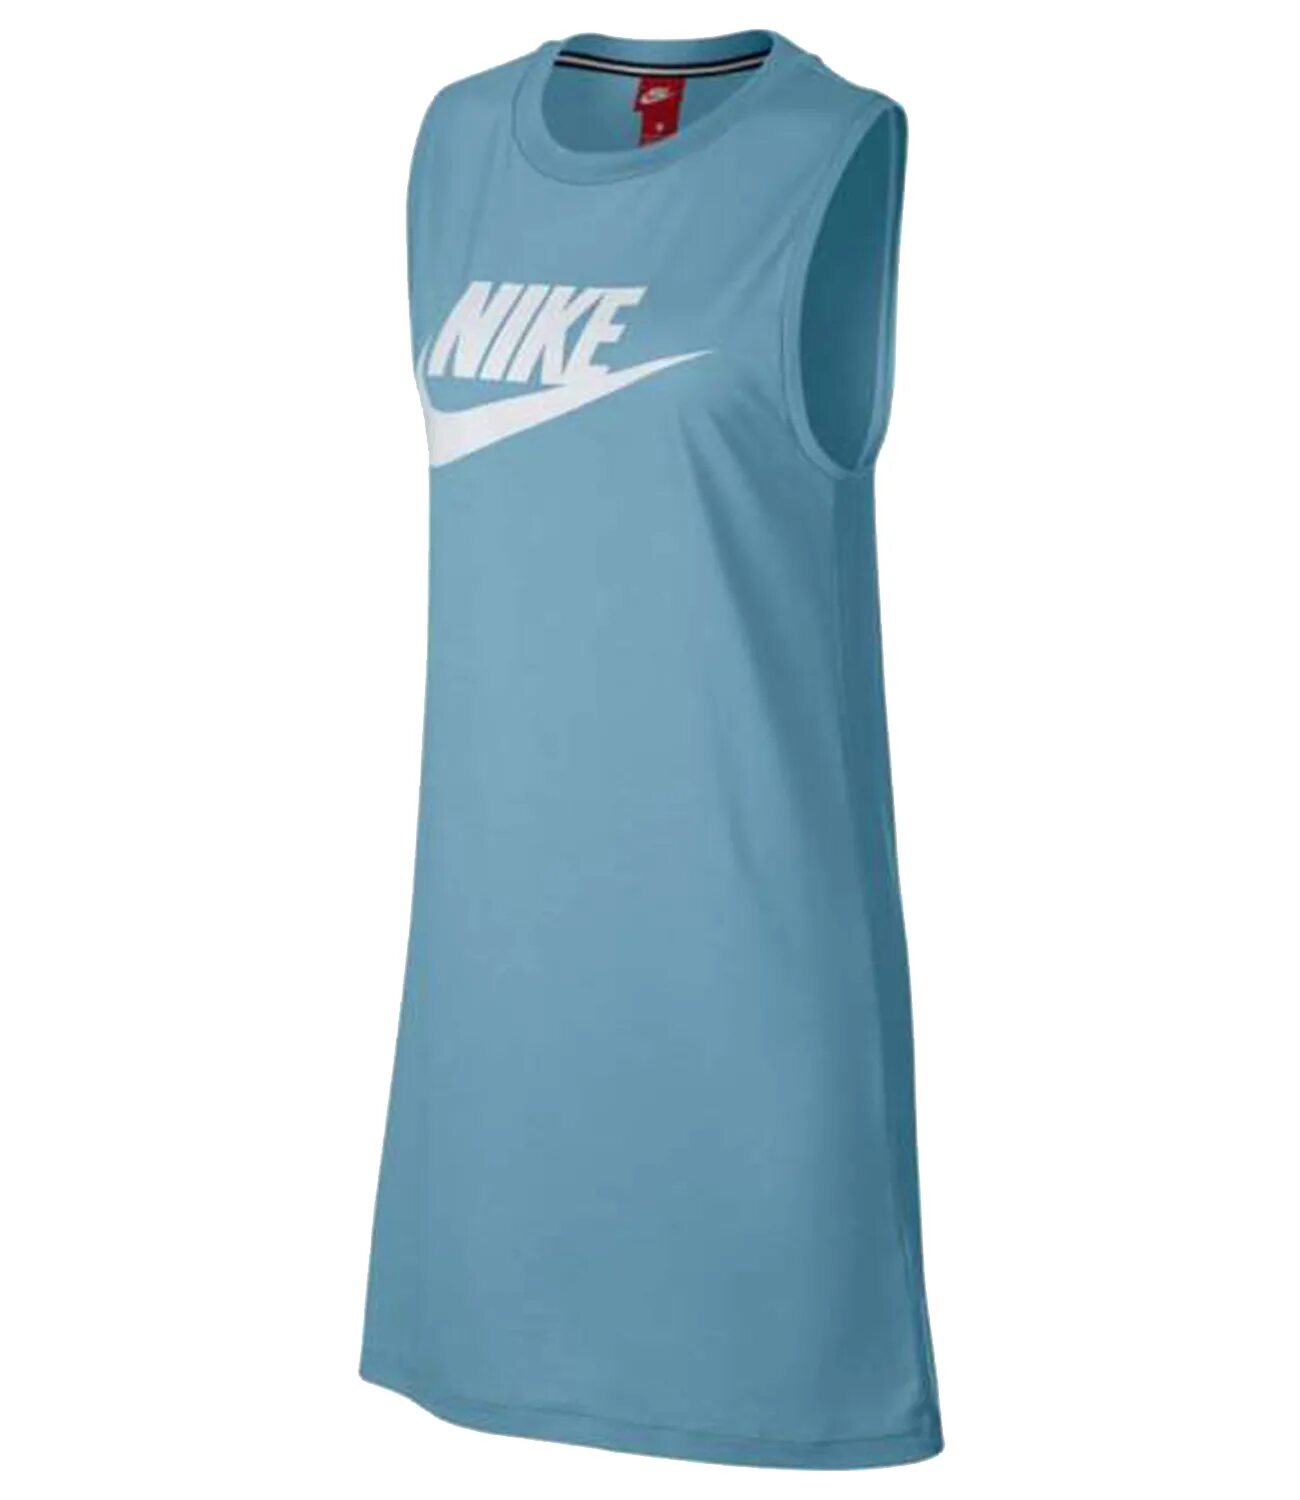 Платье найк. Платье Nike Sportswear. Футболка найк NSW hbr. Платье найк женское теннисное голубое. Майка Nike размер m, голубой.